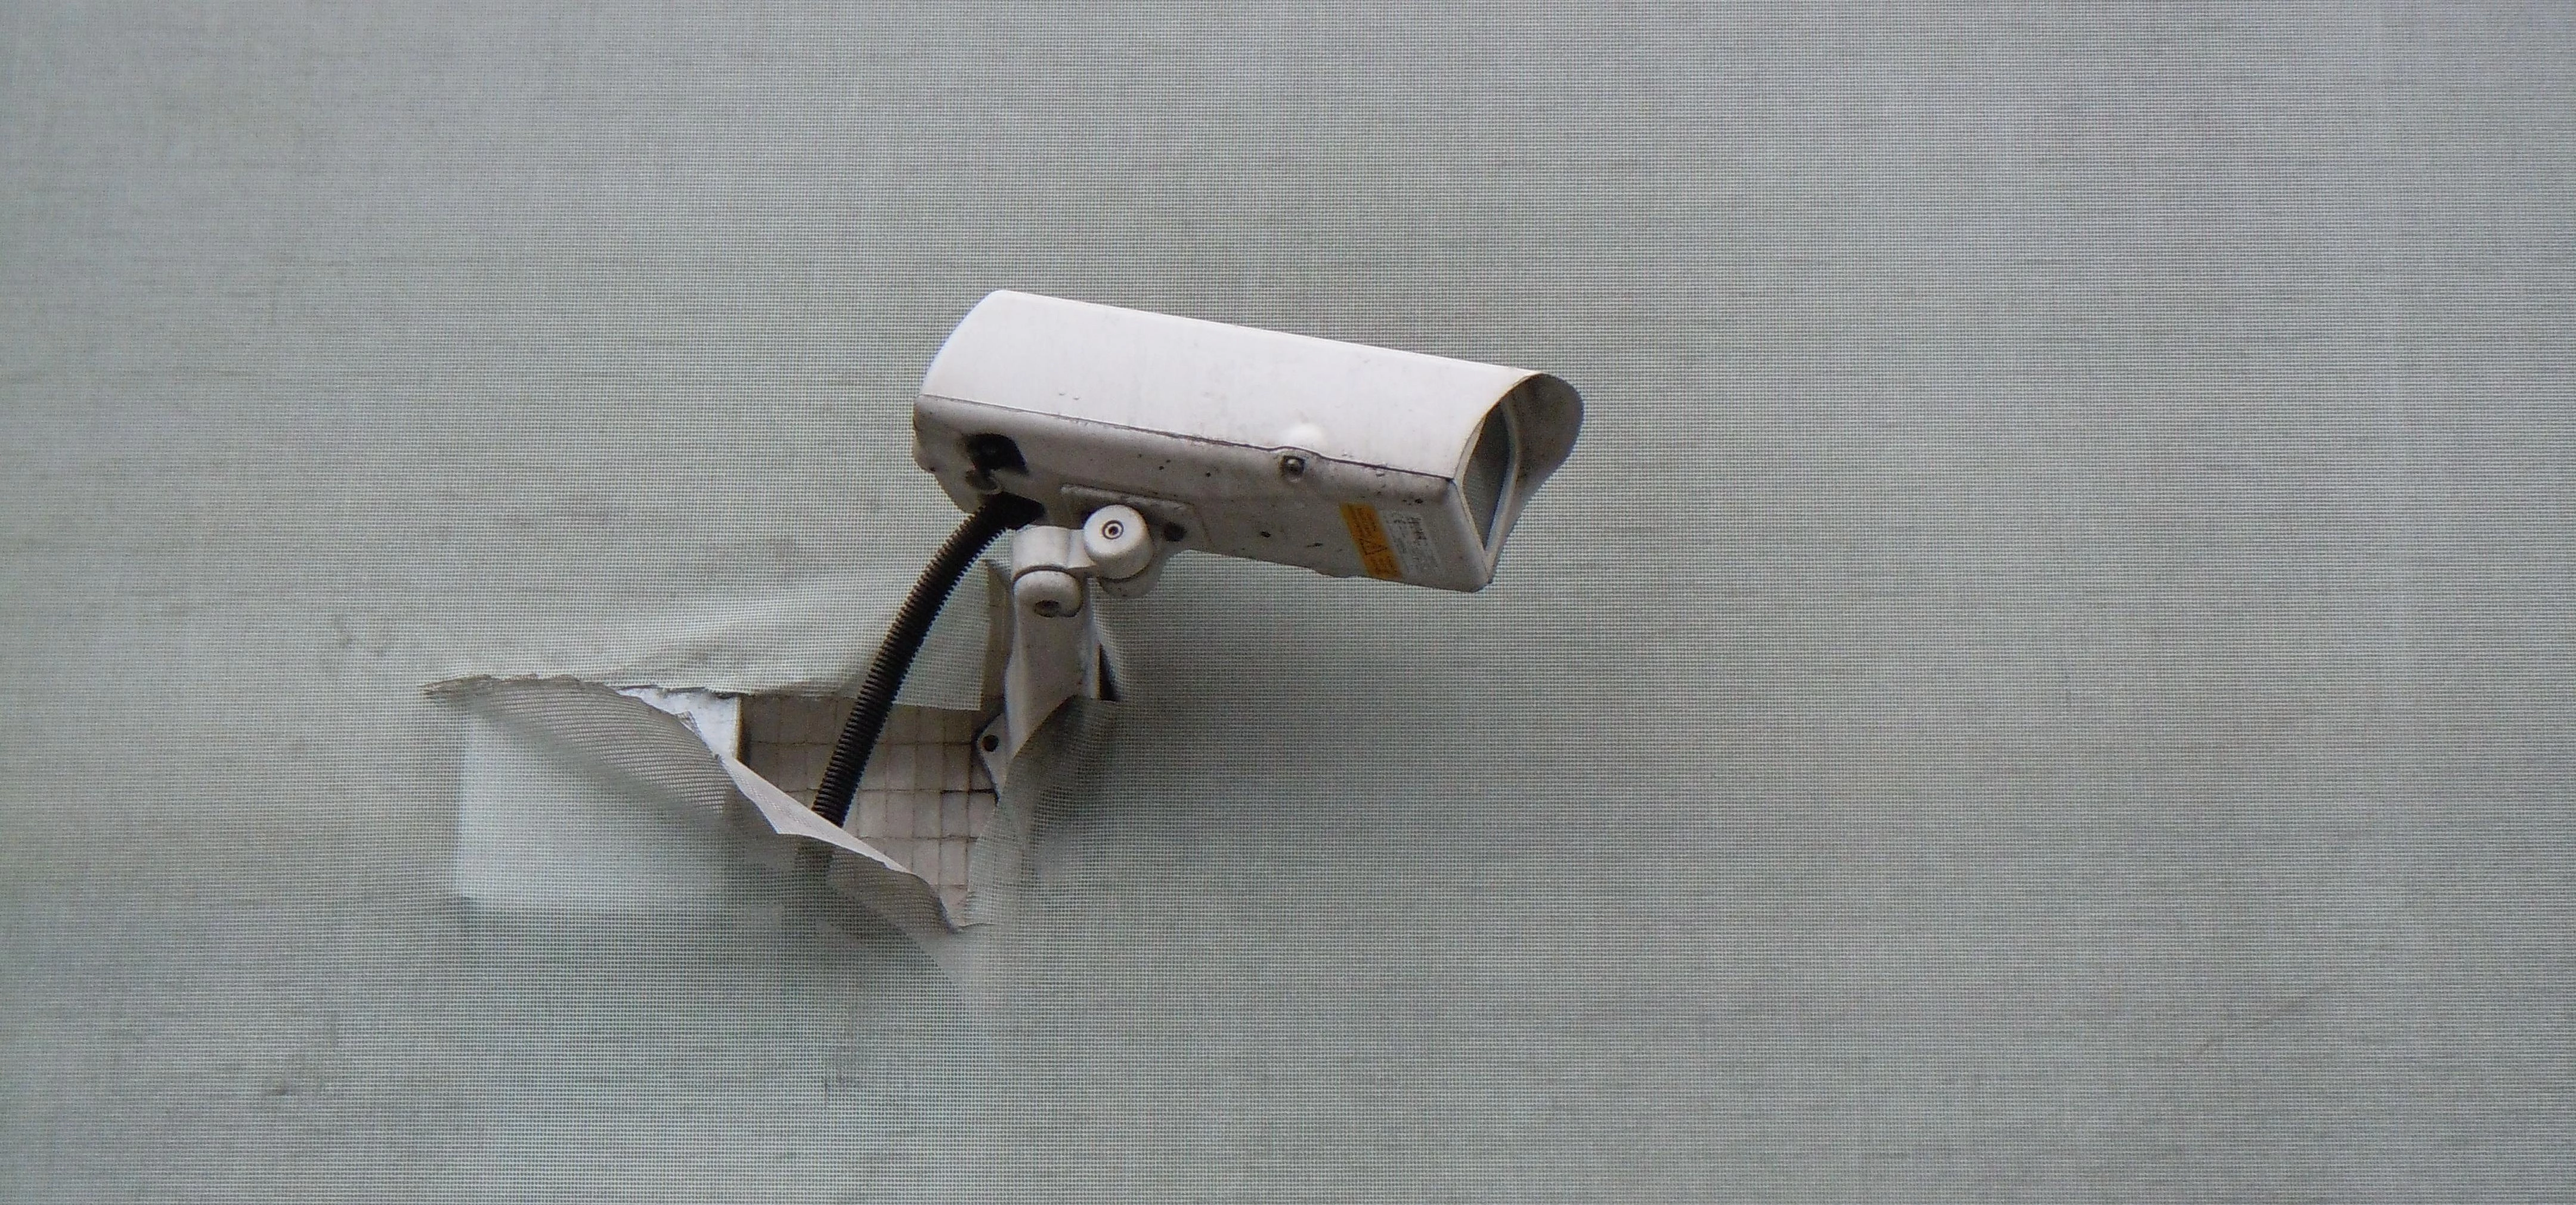 CCTV Puncture